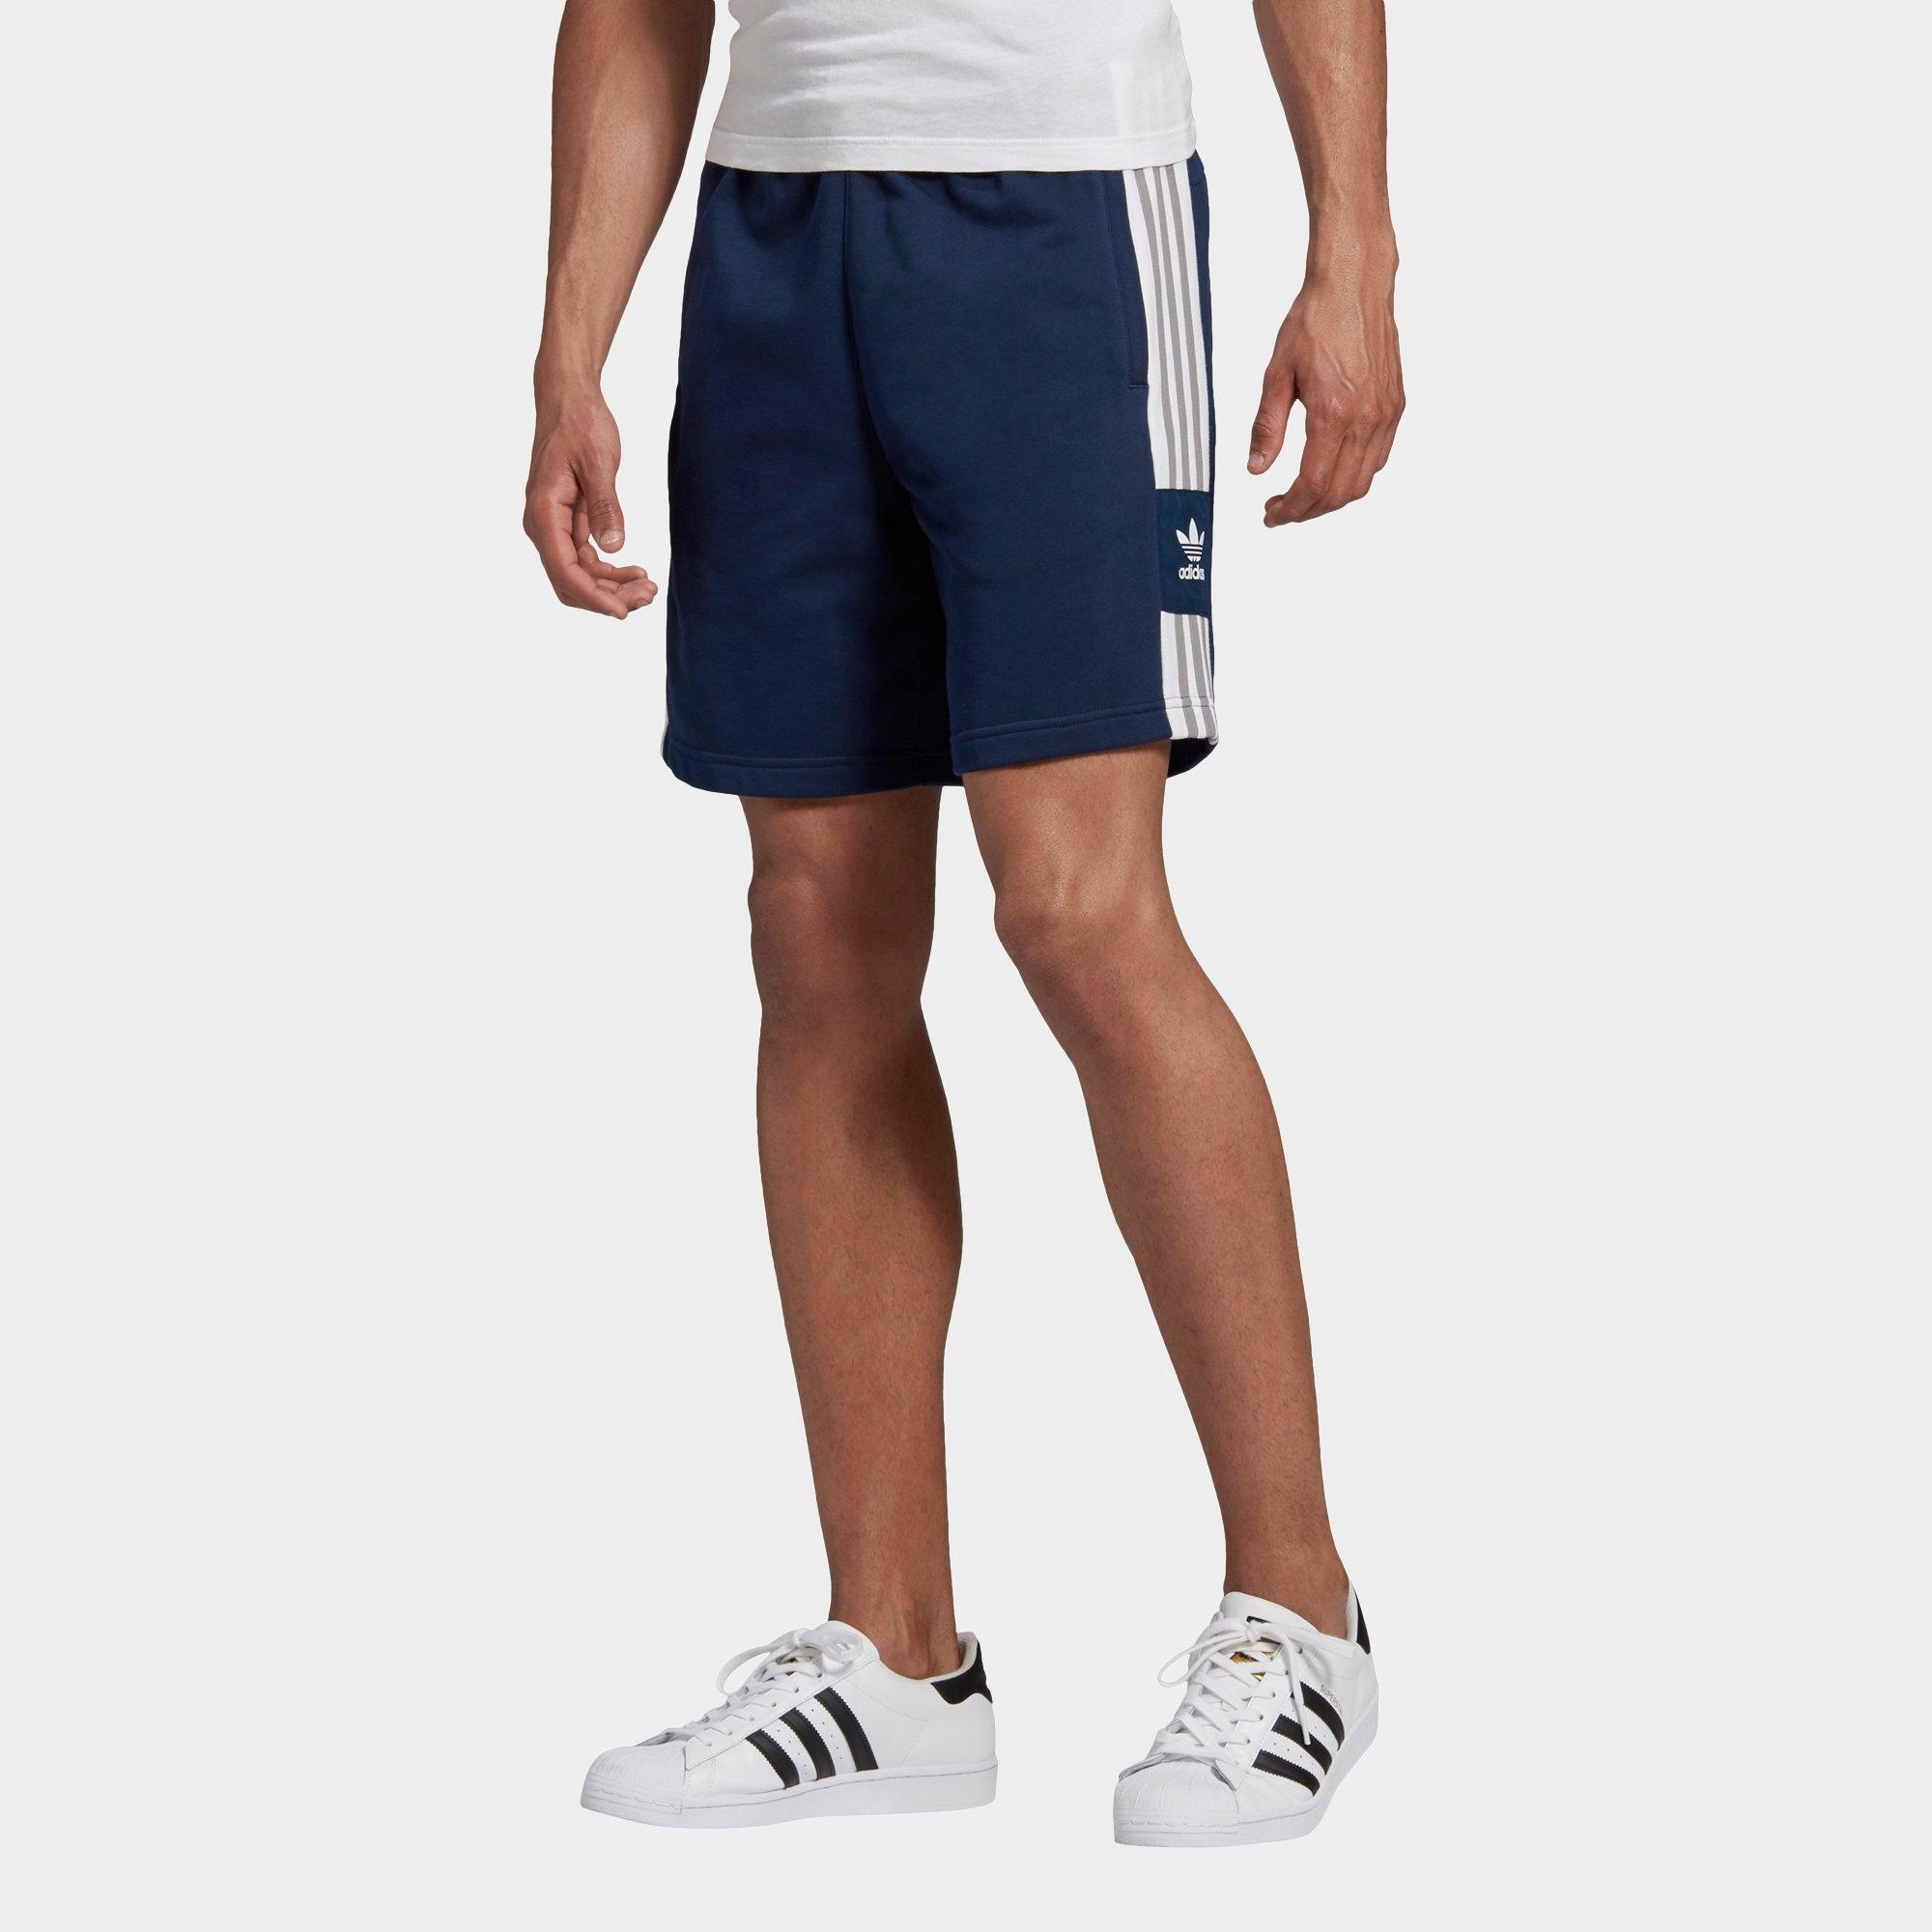 adidas shorts sale mens